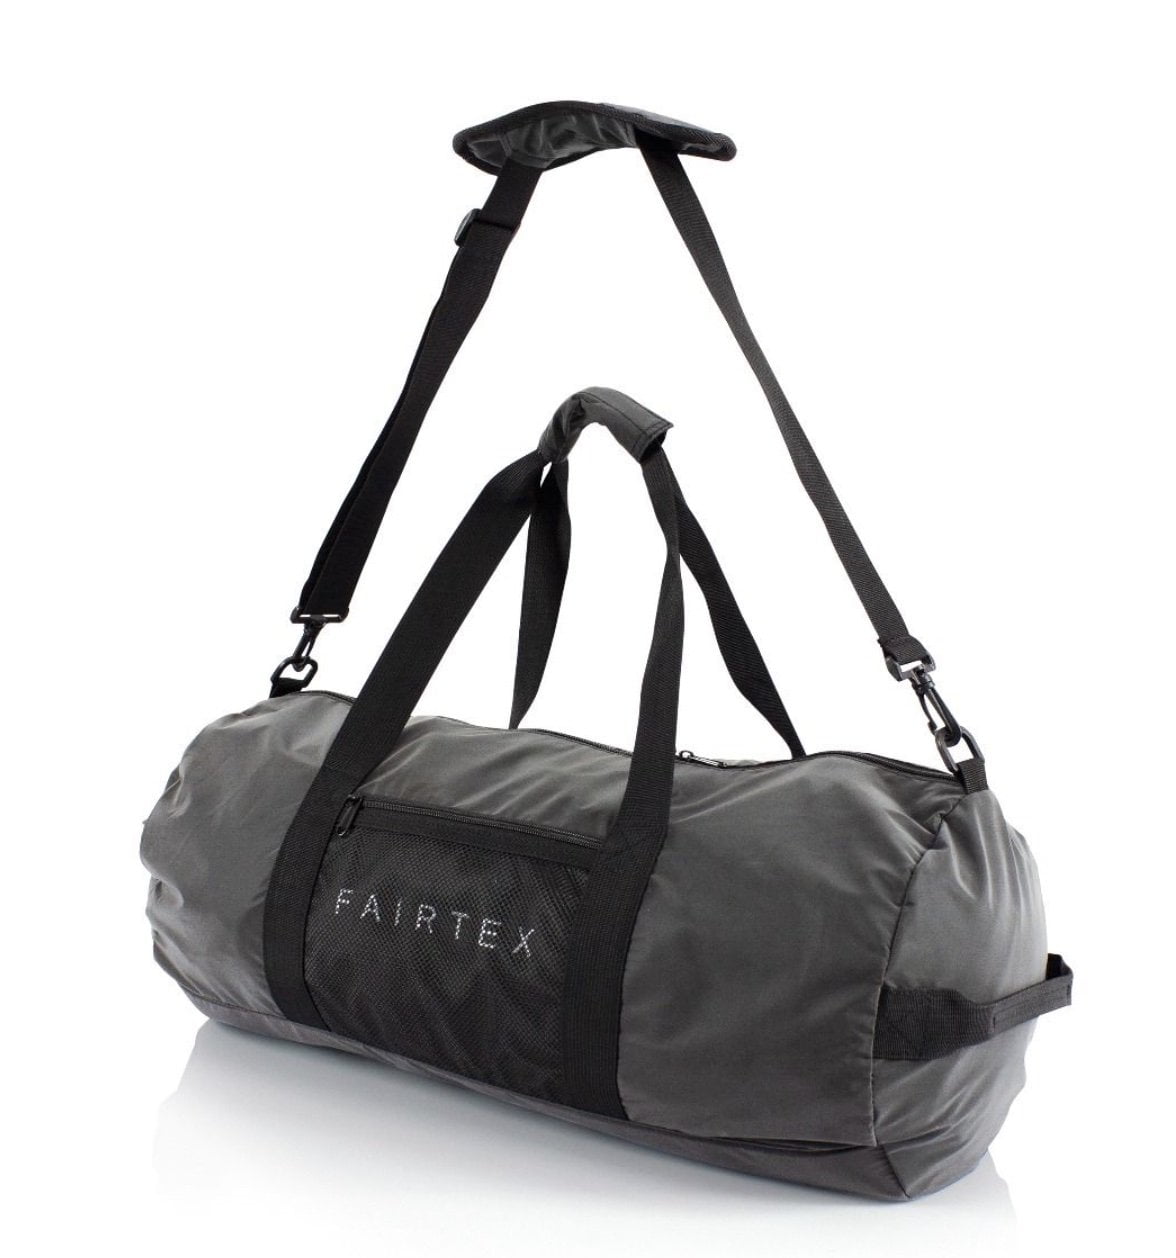 Fairtex Travel Bag - Fairtex Official